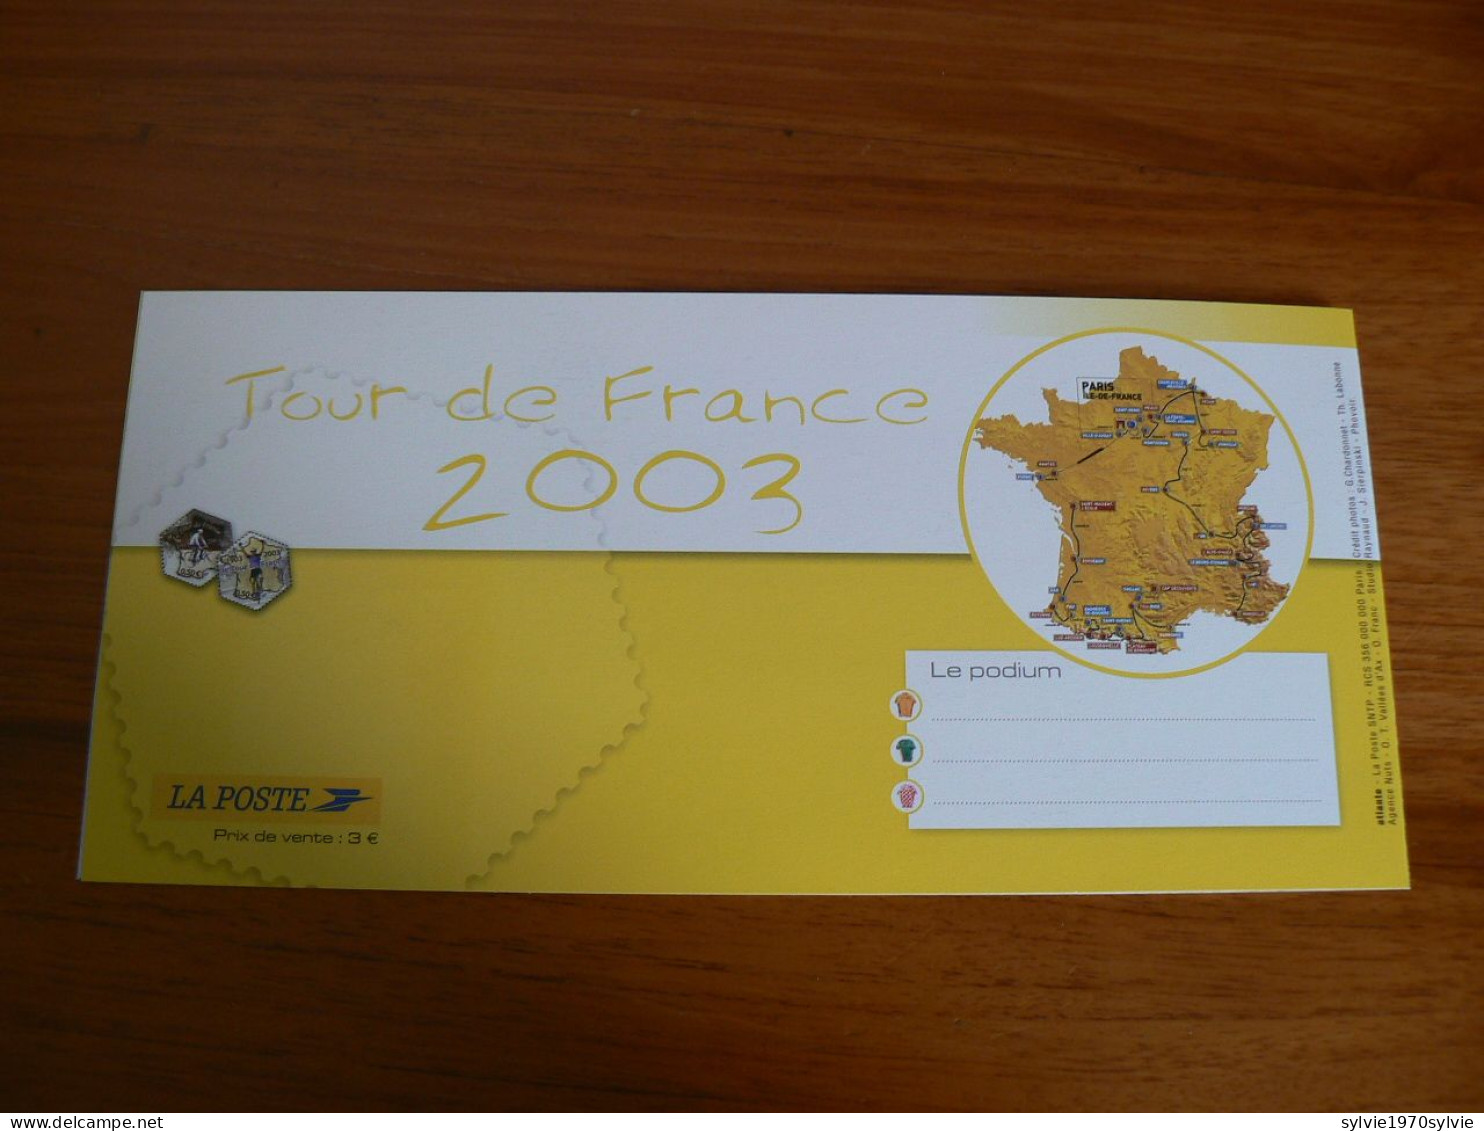 SOUVENIR PHILATELIQUE - FRANCE  TOUR DE FRANCE   - 2003 - Joint Issues